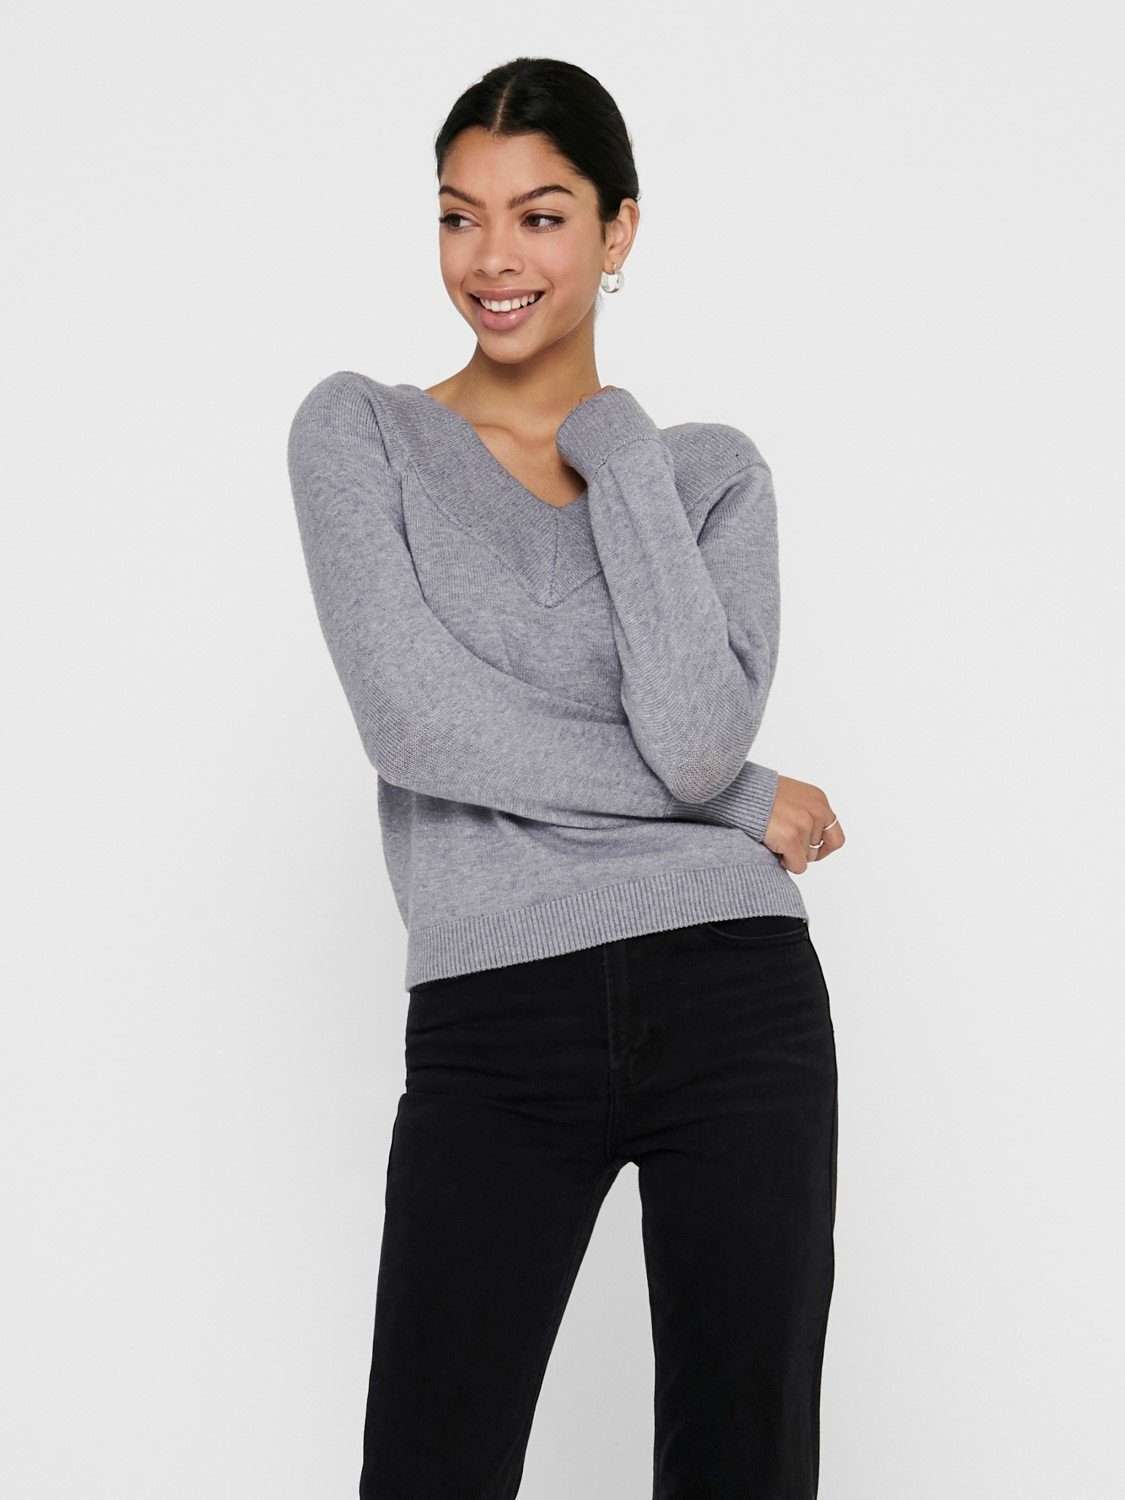 Вязаный свитер с открытыми плечами Свитер тонкой вязки JDYSHANON с длинным рукавом (1 шт.) 3659 серого цвета